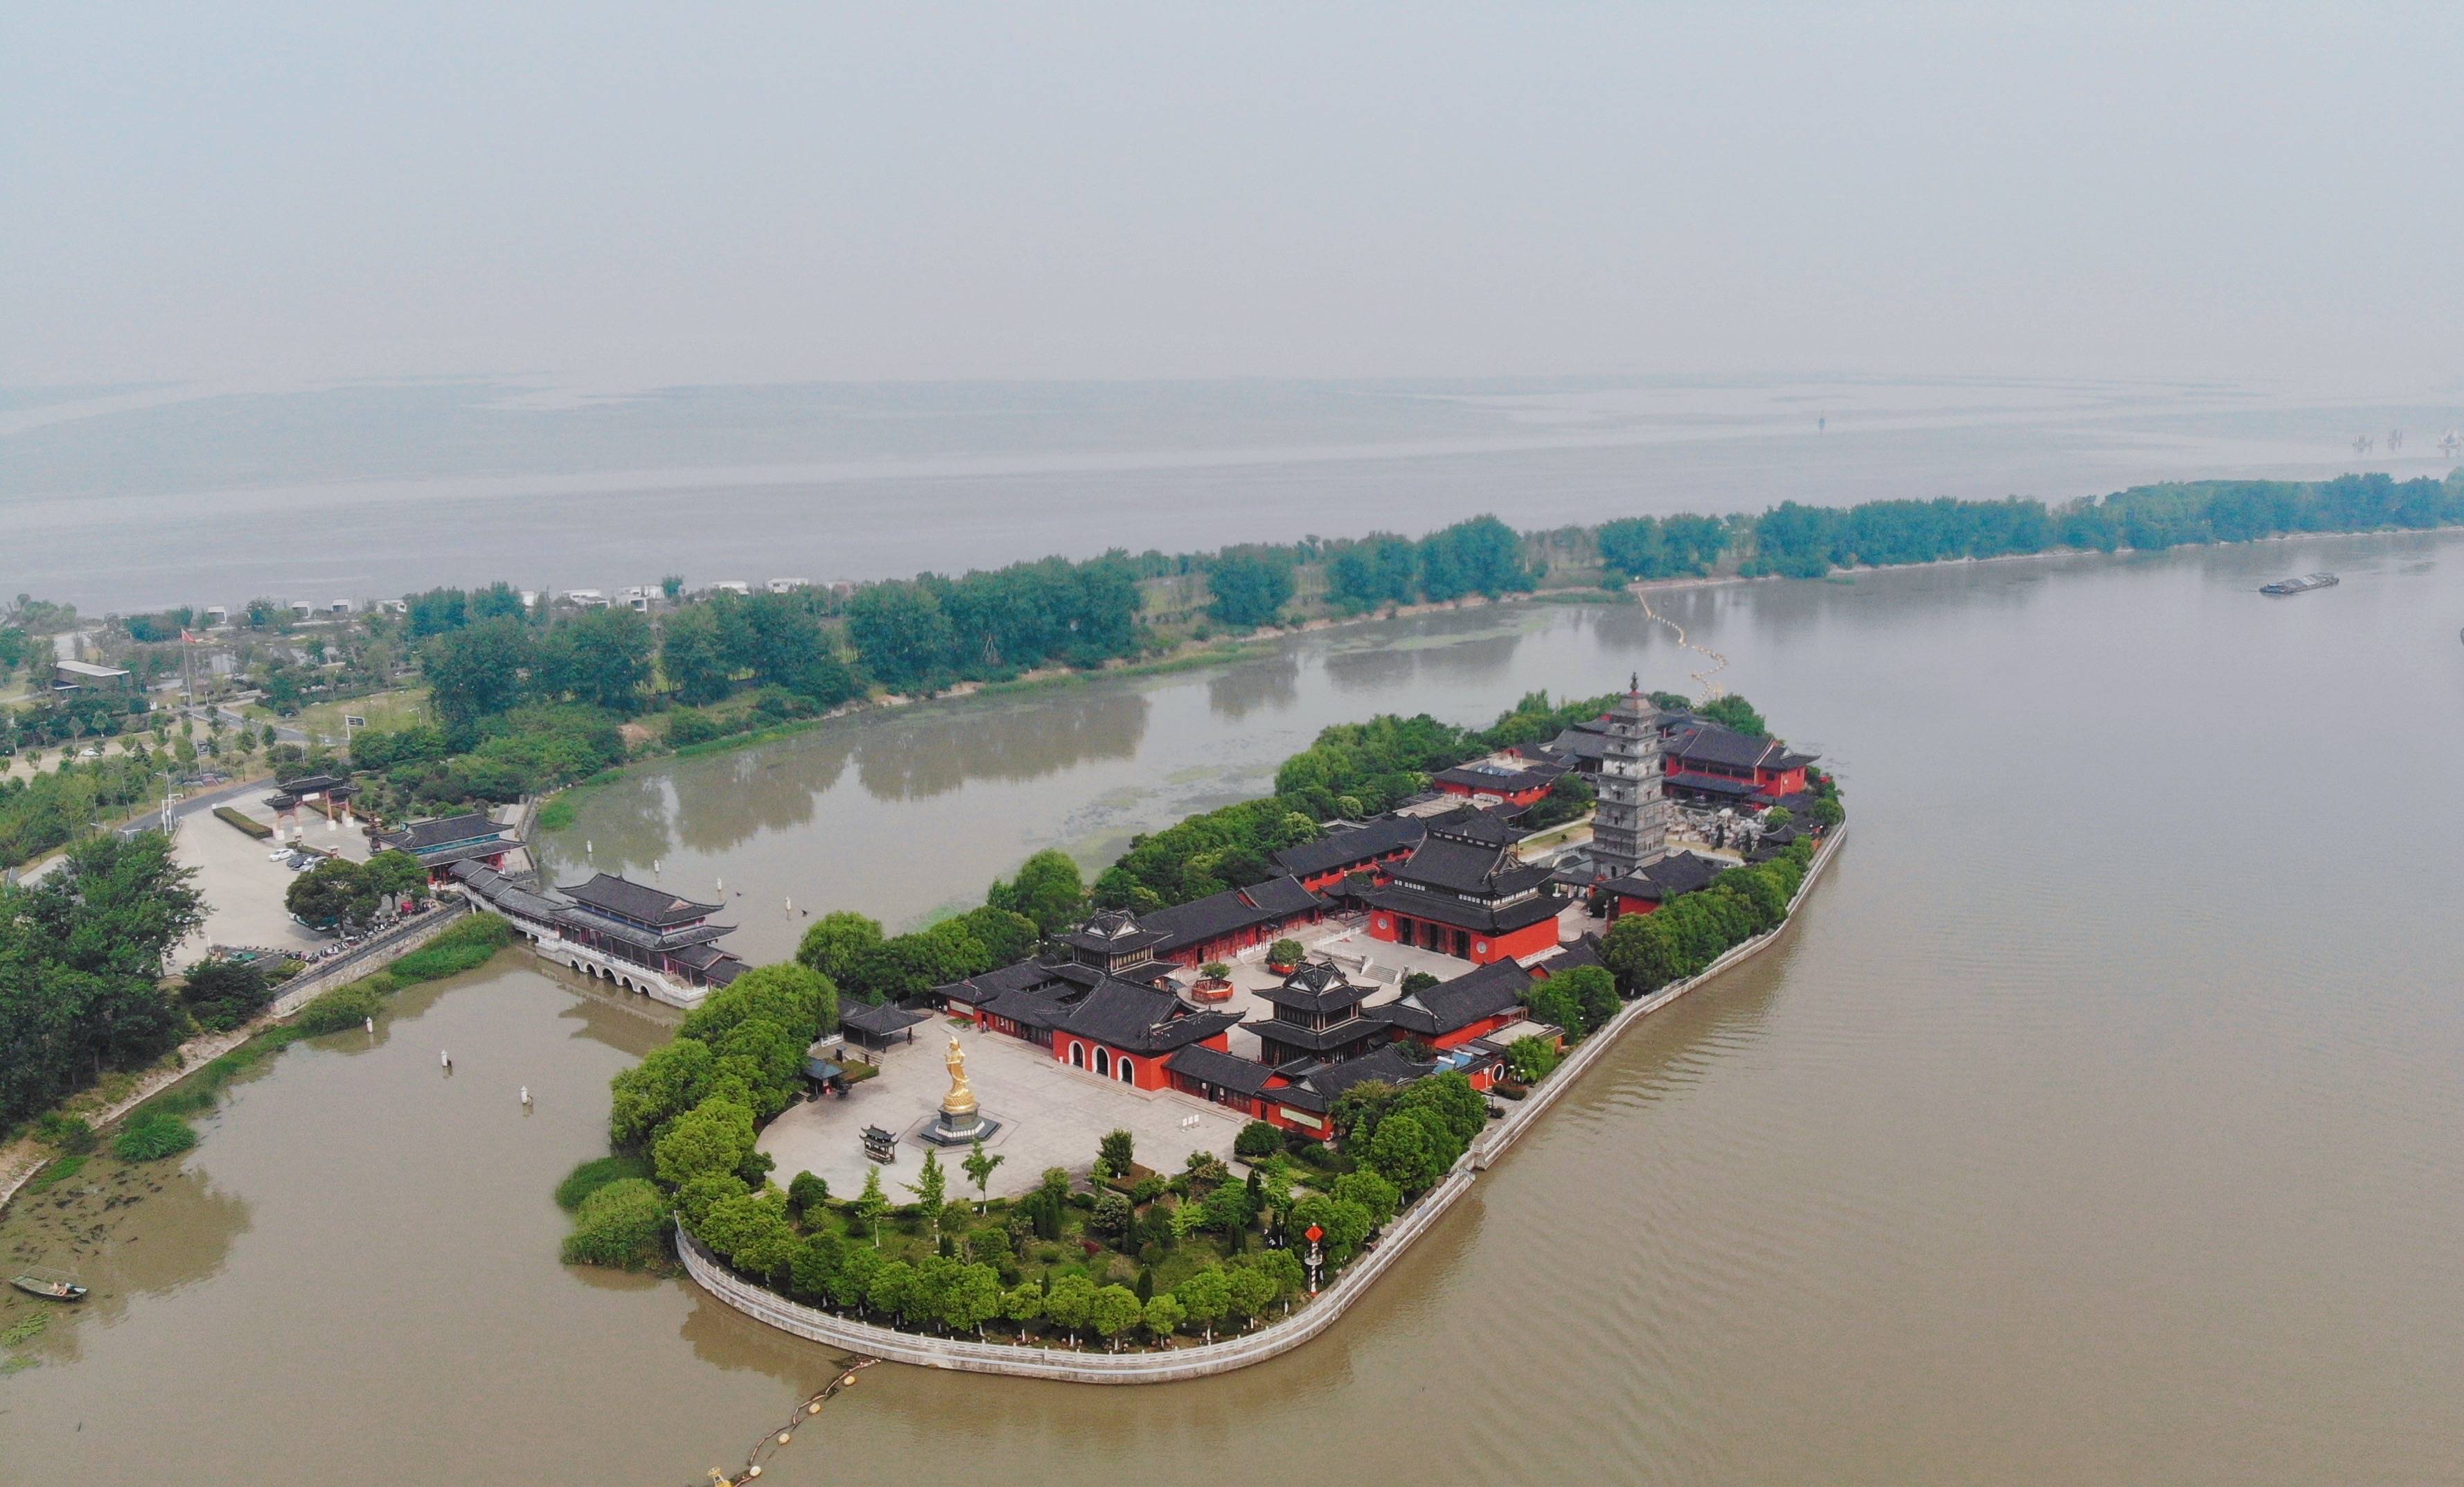 江苏高邮镇国寺,漂浮在京杭运河的千年古寺,耗重金保留的钉子户